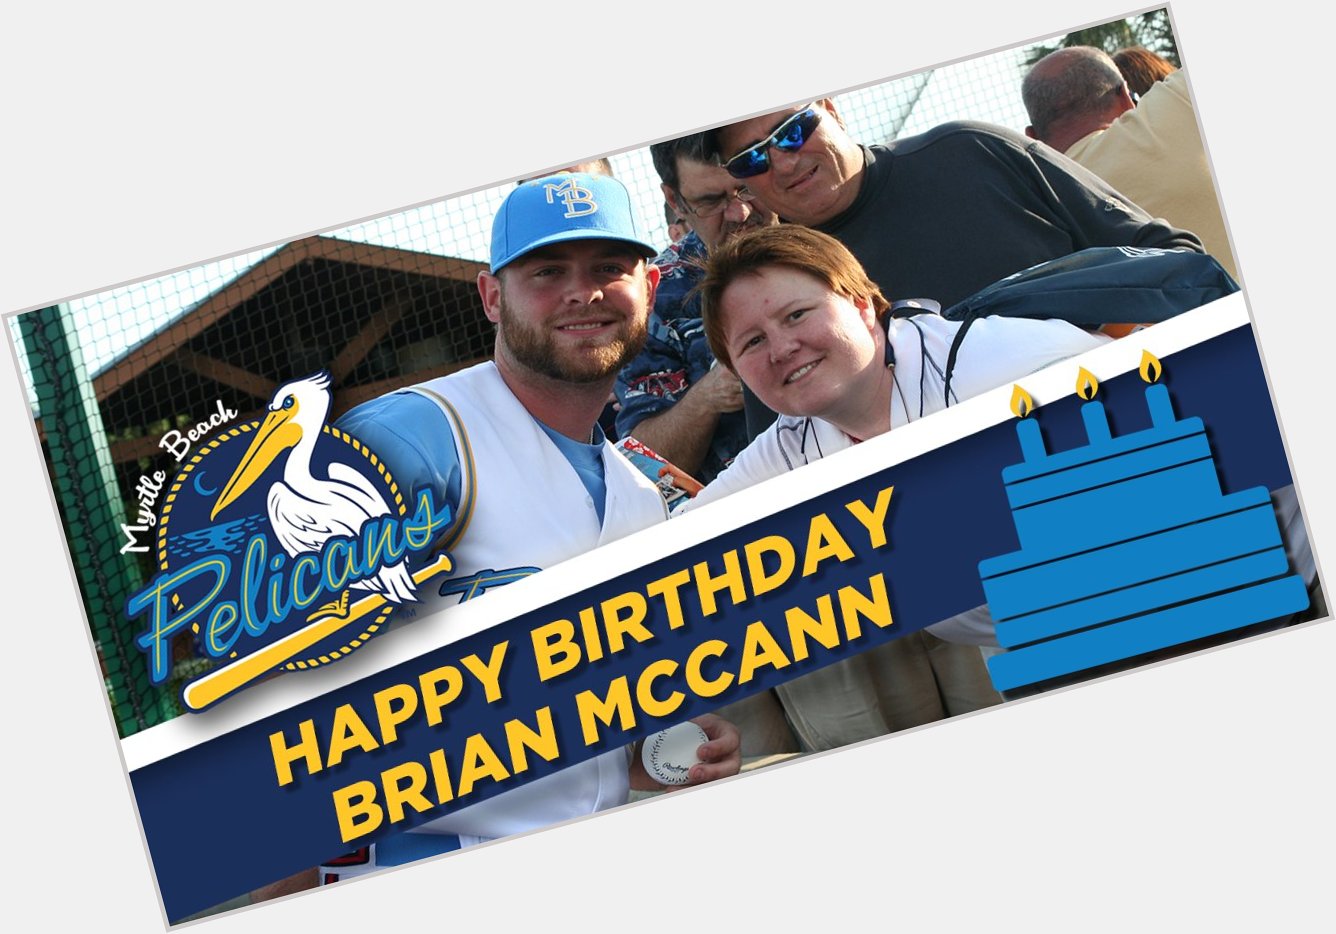 Wishing Brian McCann a very Happy Birthday! 